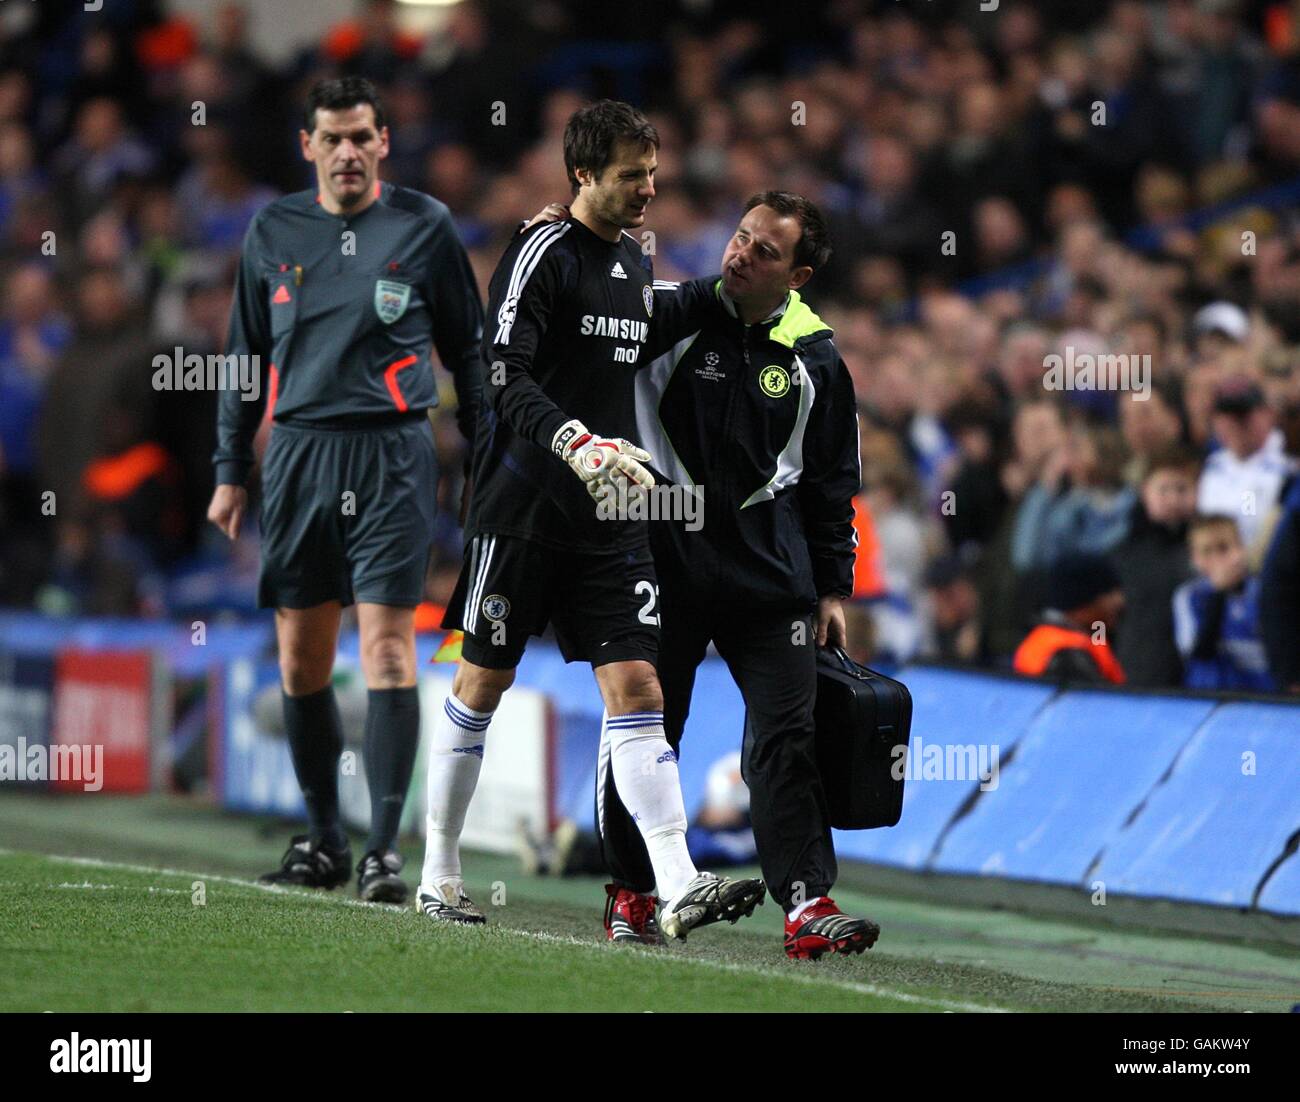 Fußball - UEFA Champions League - Viertelfinale - zweite Etappe - Chelsea gegen Fenerbahce - Stamford Bridge. Chelsea-Torhüter Carlo Cudicini lästert, als er das Feld verlässt, um von Henrique Hilario ersetzt zu werden Stockfoto